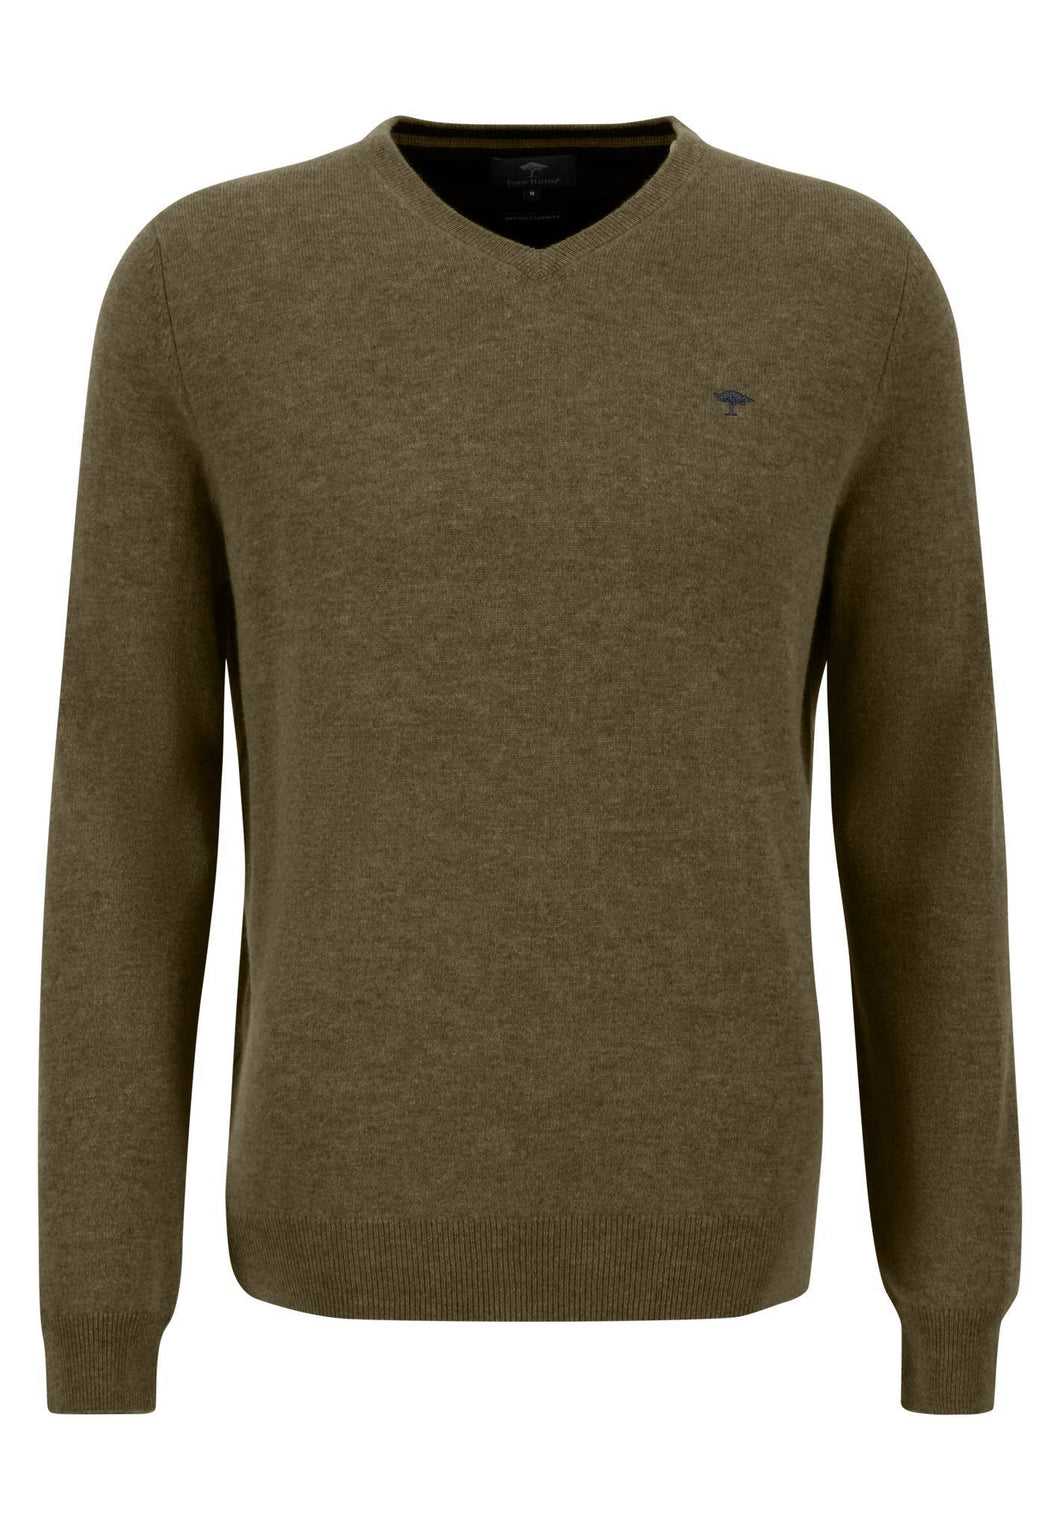 New Fynch Hatton Soft Green Merino Cashmere Sweater